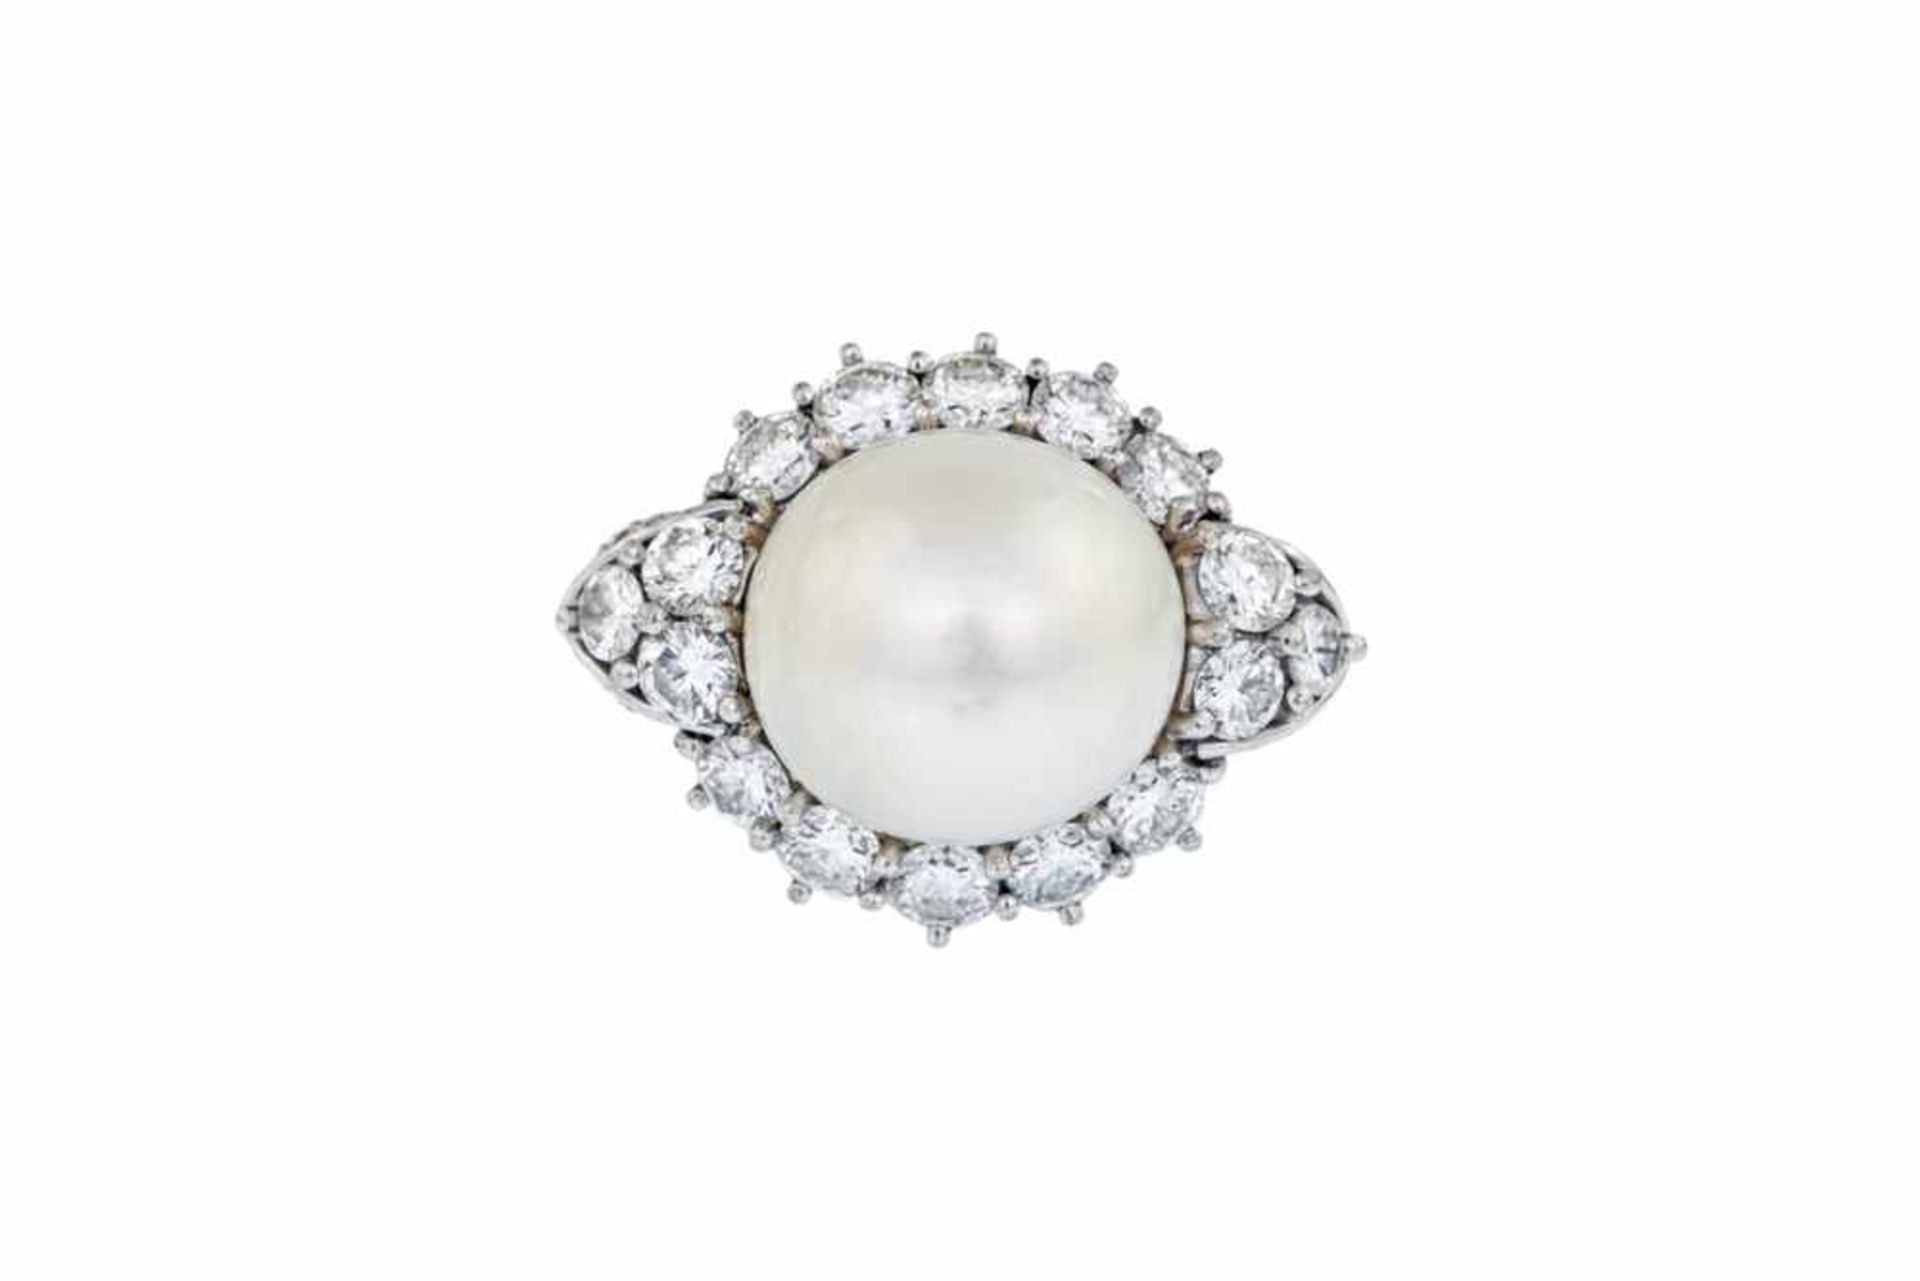 ANELLO IN ORO BIANCO CON GRANDE PERLA E BRILLANTI| Anello in oro bianco 18 kt con perla a tutto